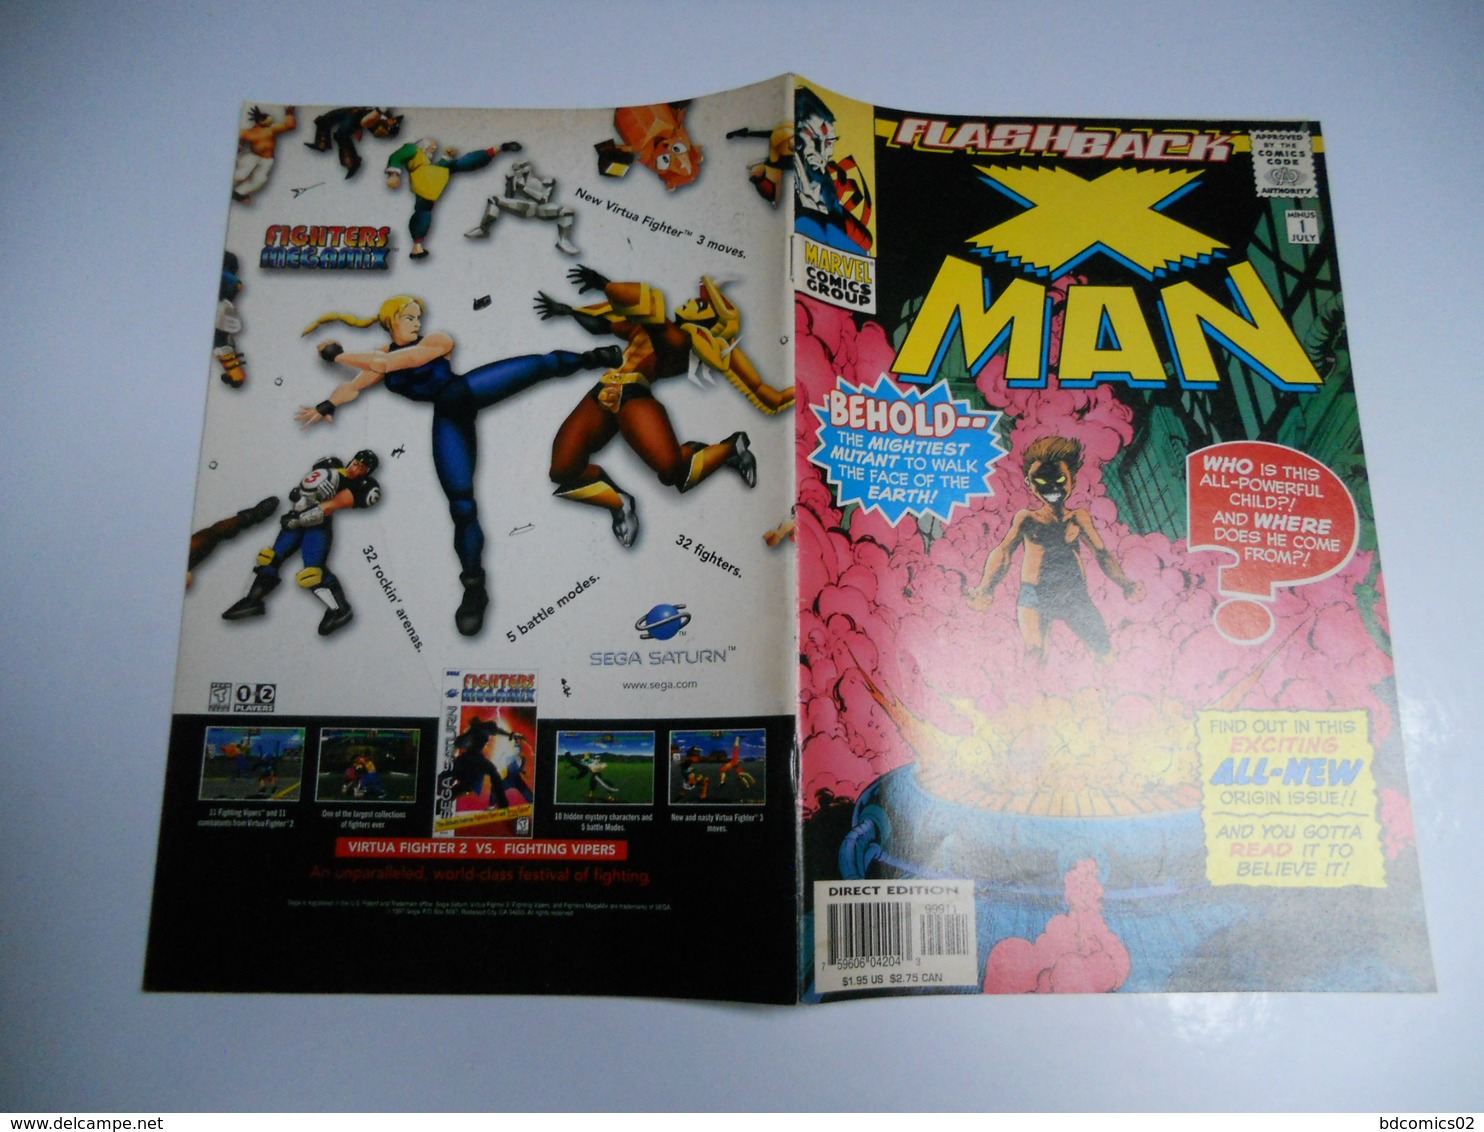 X MAN VOL 1 FLASH BACK N°1 MARVEL COMICS GROUP EN V O - Marvel